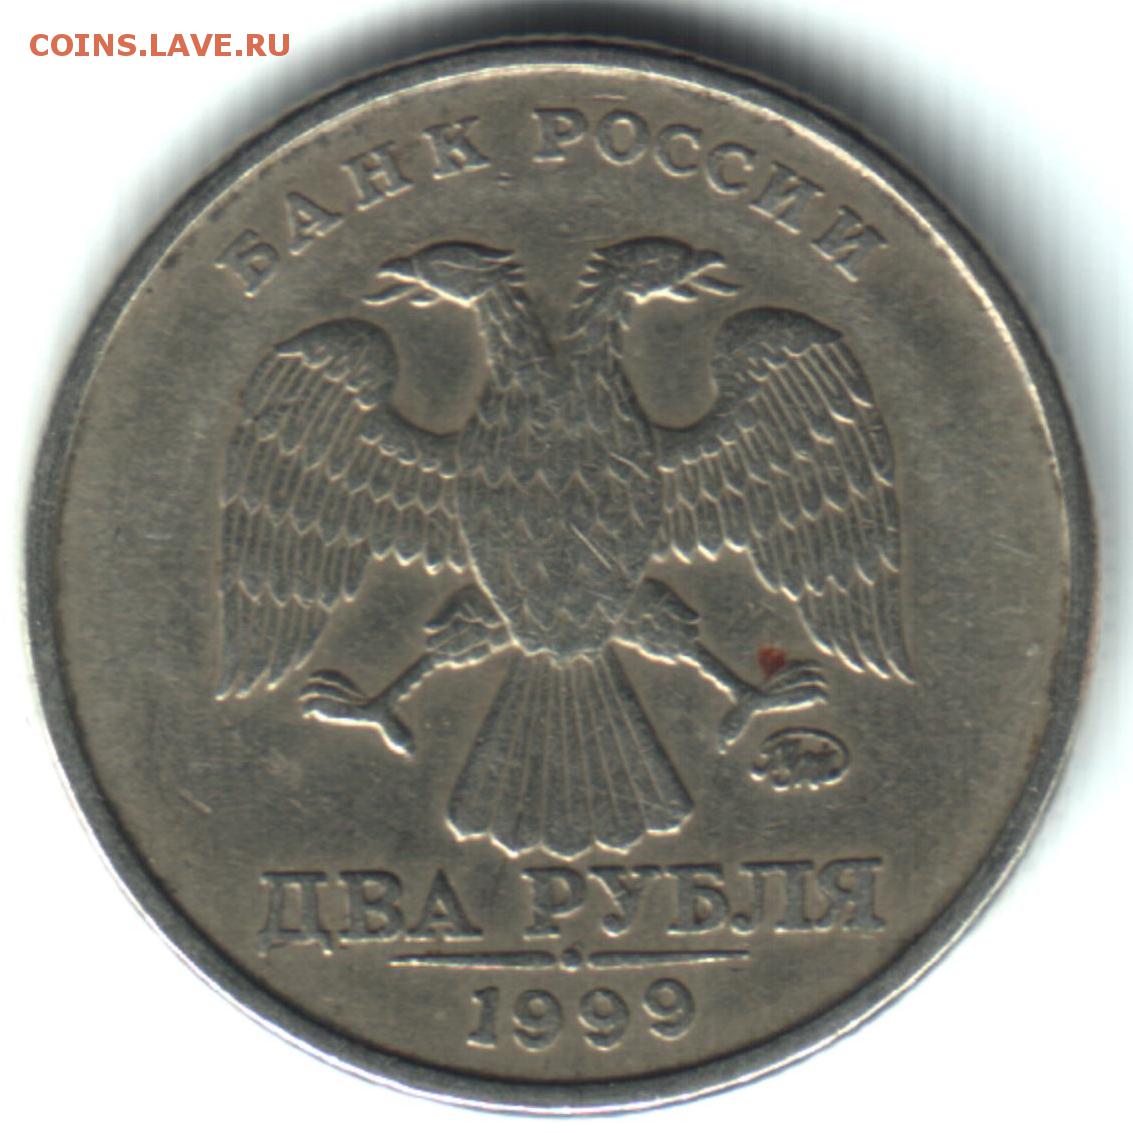 10 23 в рублях. СПДМ монеты. 10 Рублей 1999. Монета 5 рублей 1999 года СПМД. Как выглядит СПДМ на монетах.